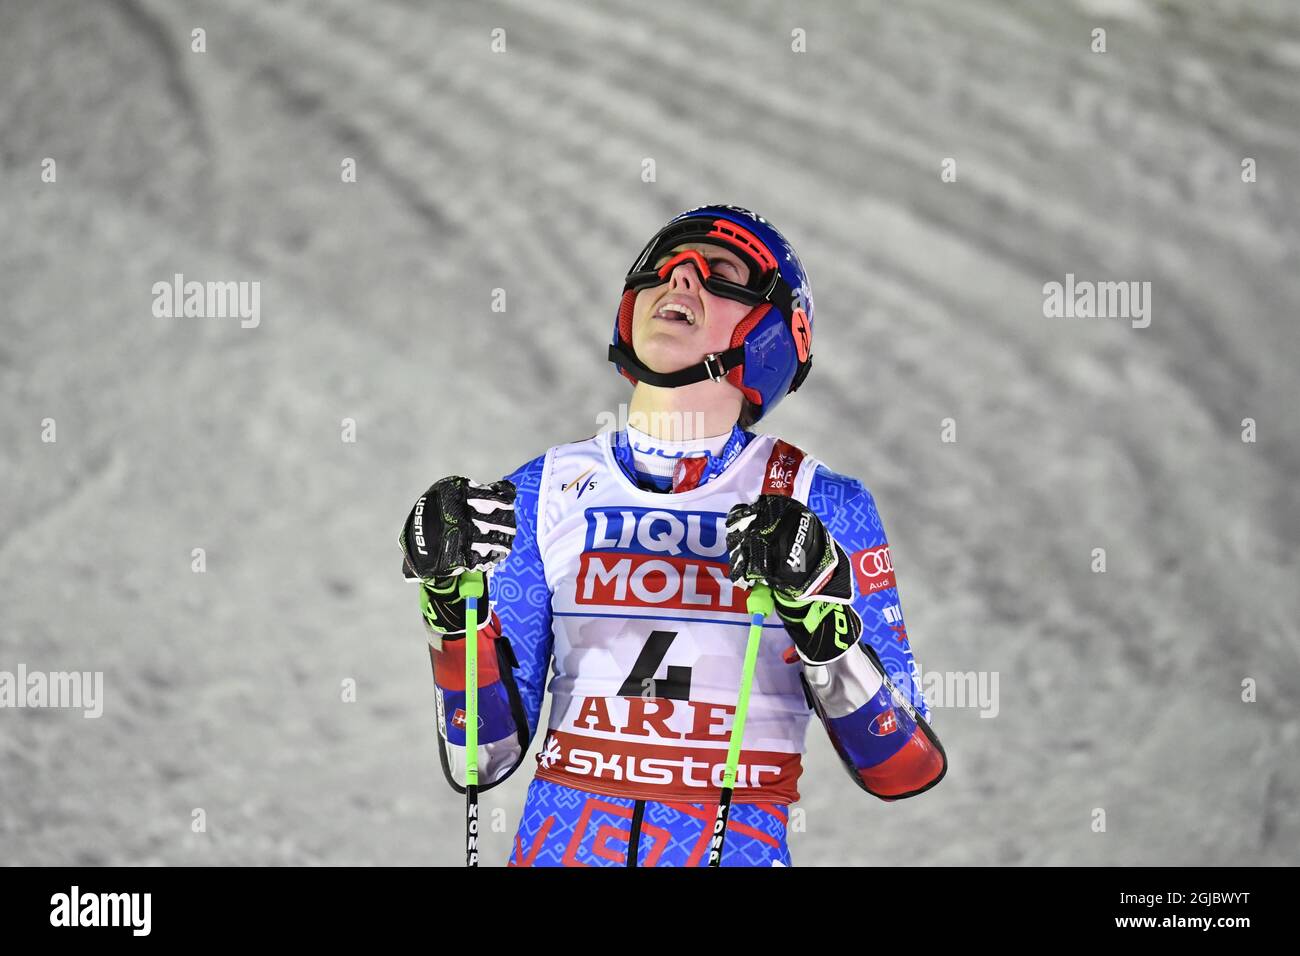 Petra Vlhova in Slovacchia ha vinto lo slalom gigante femminile ai Campionati mondiali di sci alpino FIS di are, Svezia, dal 14 febbraio 2019. Foto: Anders Wiklund/ TT Foto Stock